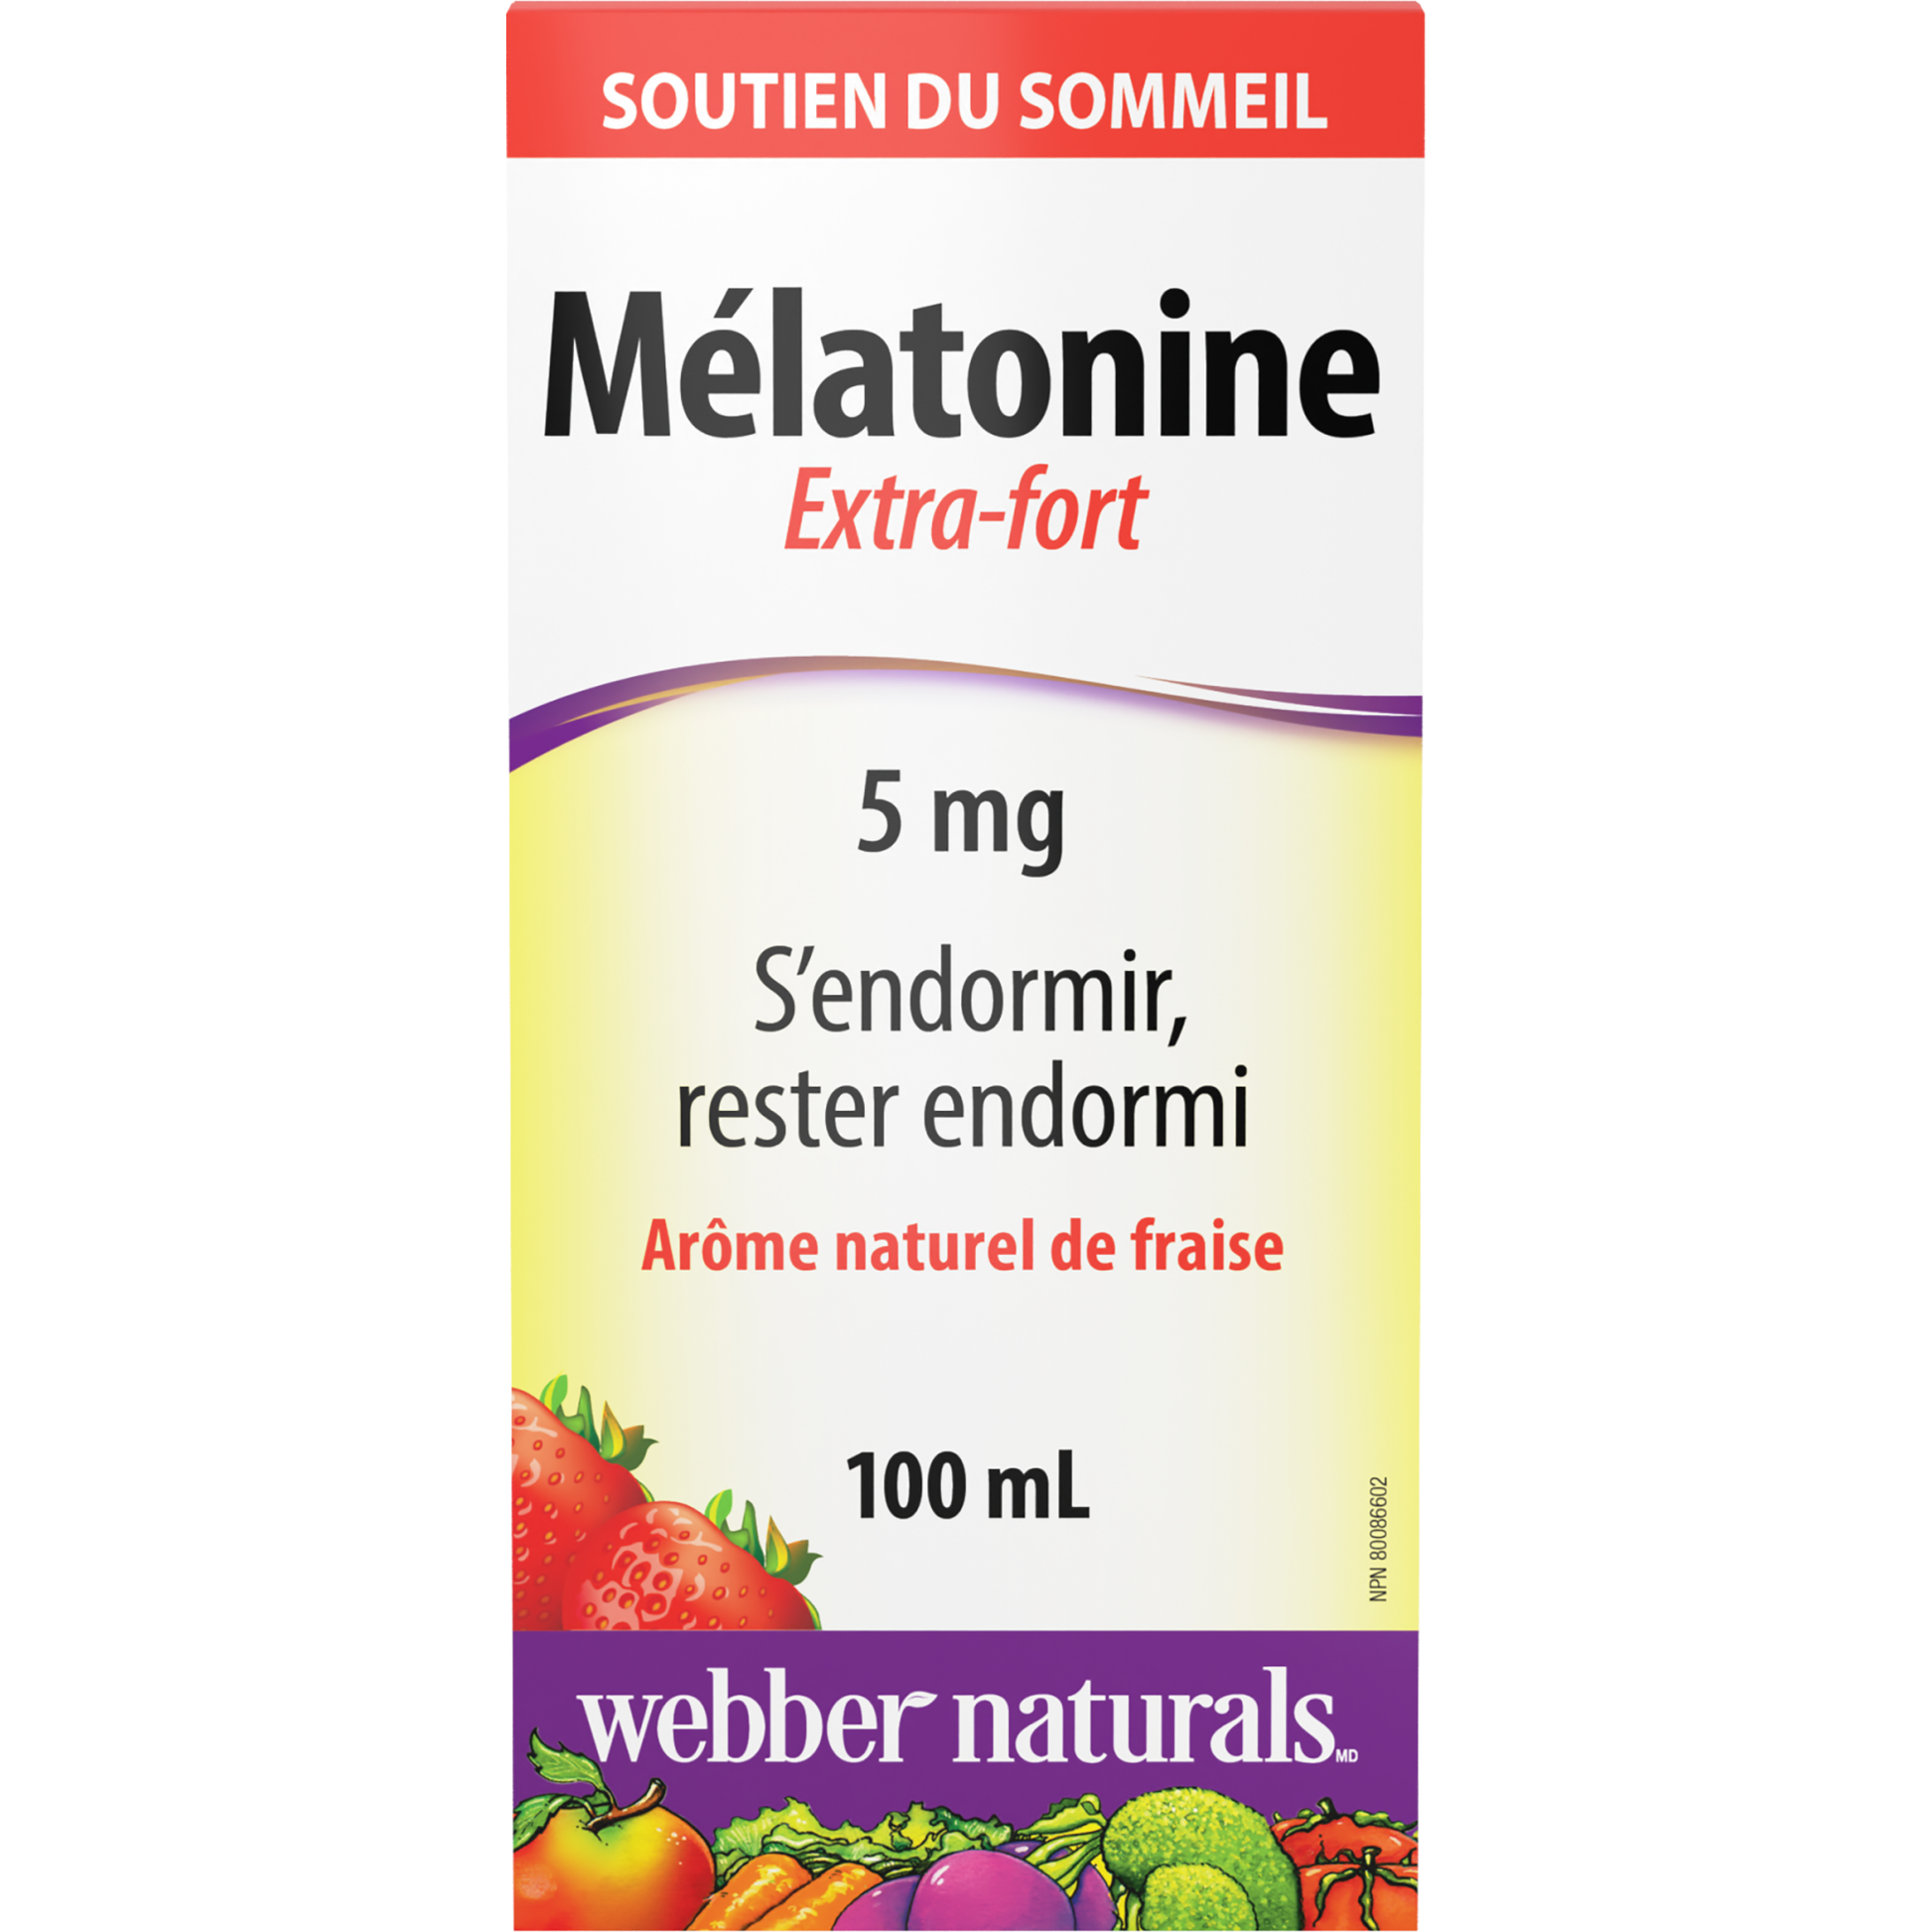 Mélatonine Extra-fort 5 mg Arôme naturel de fraise for Webber Naturals|v|hi-res|WN3599